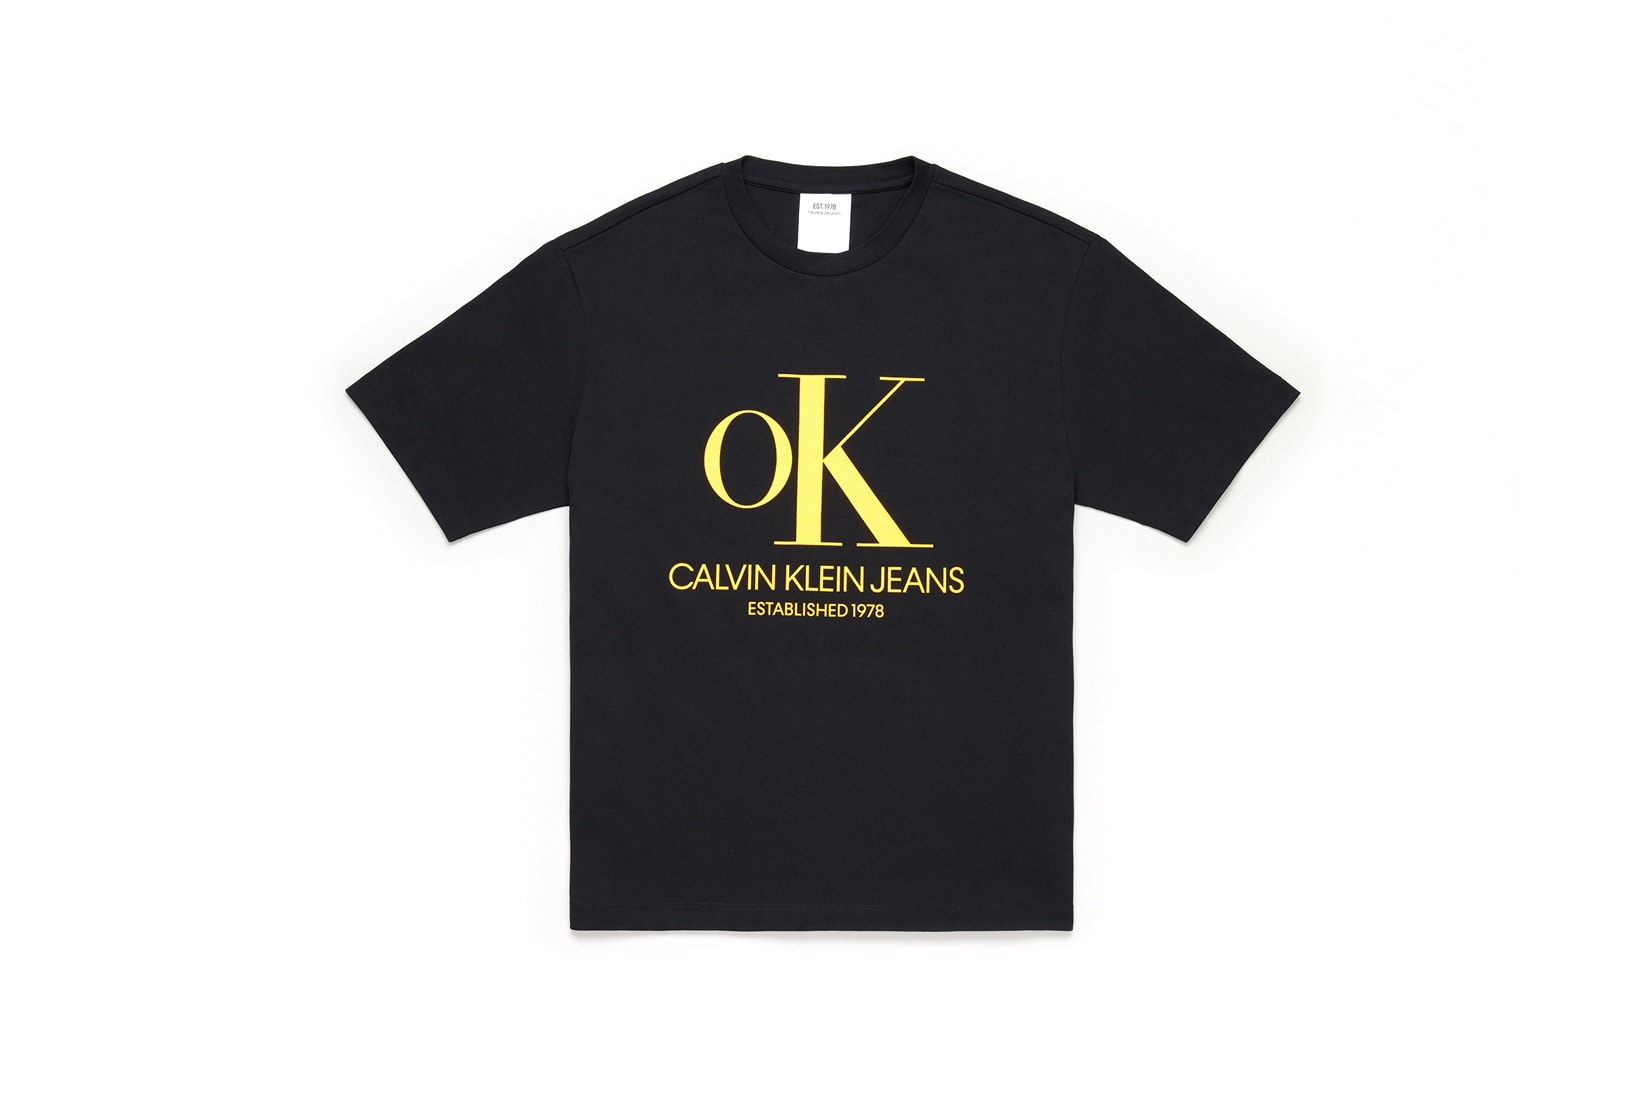 CALVIN KLEIN JEANS EST. 1978 Delivery 2 Drop 02 T-shirt Black Yellow